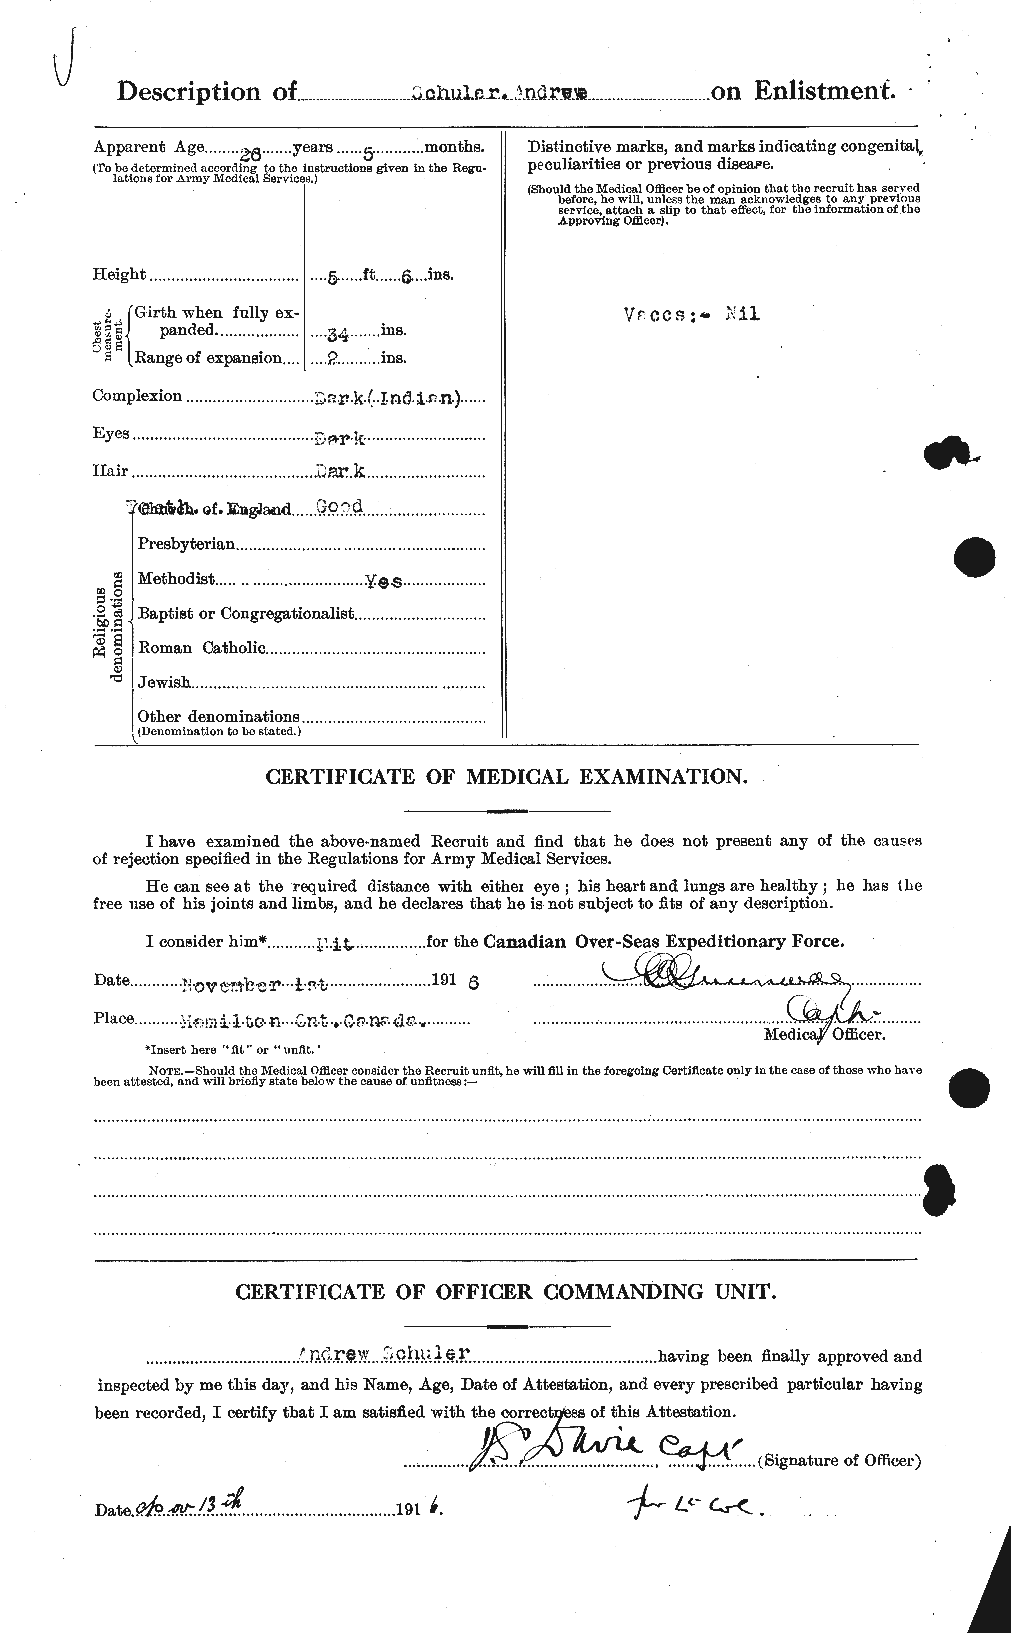 Dossiers du Personnel de la Première Guerre mondiale - CEC 082850b